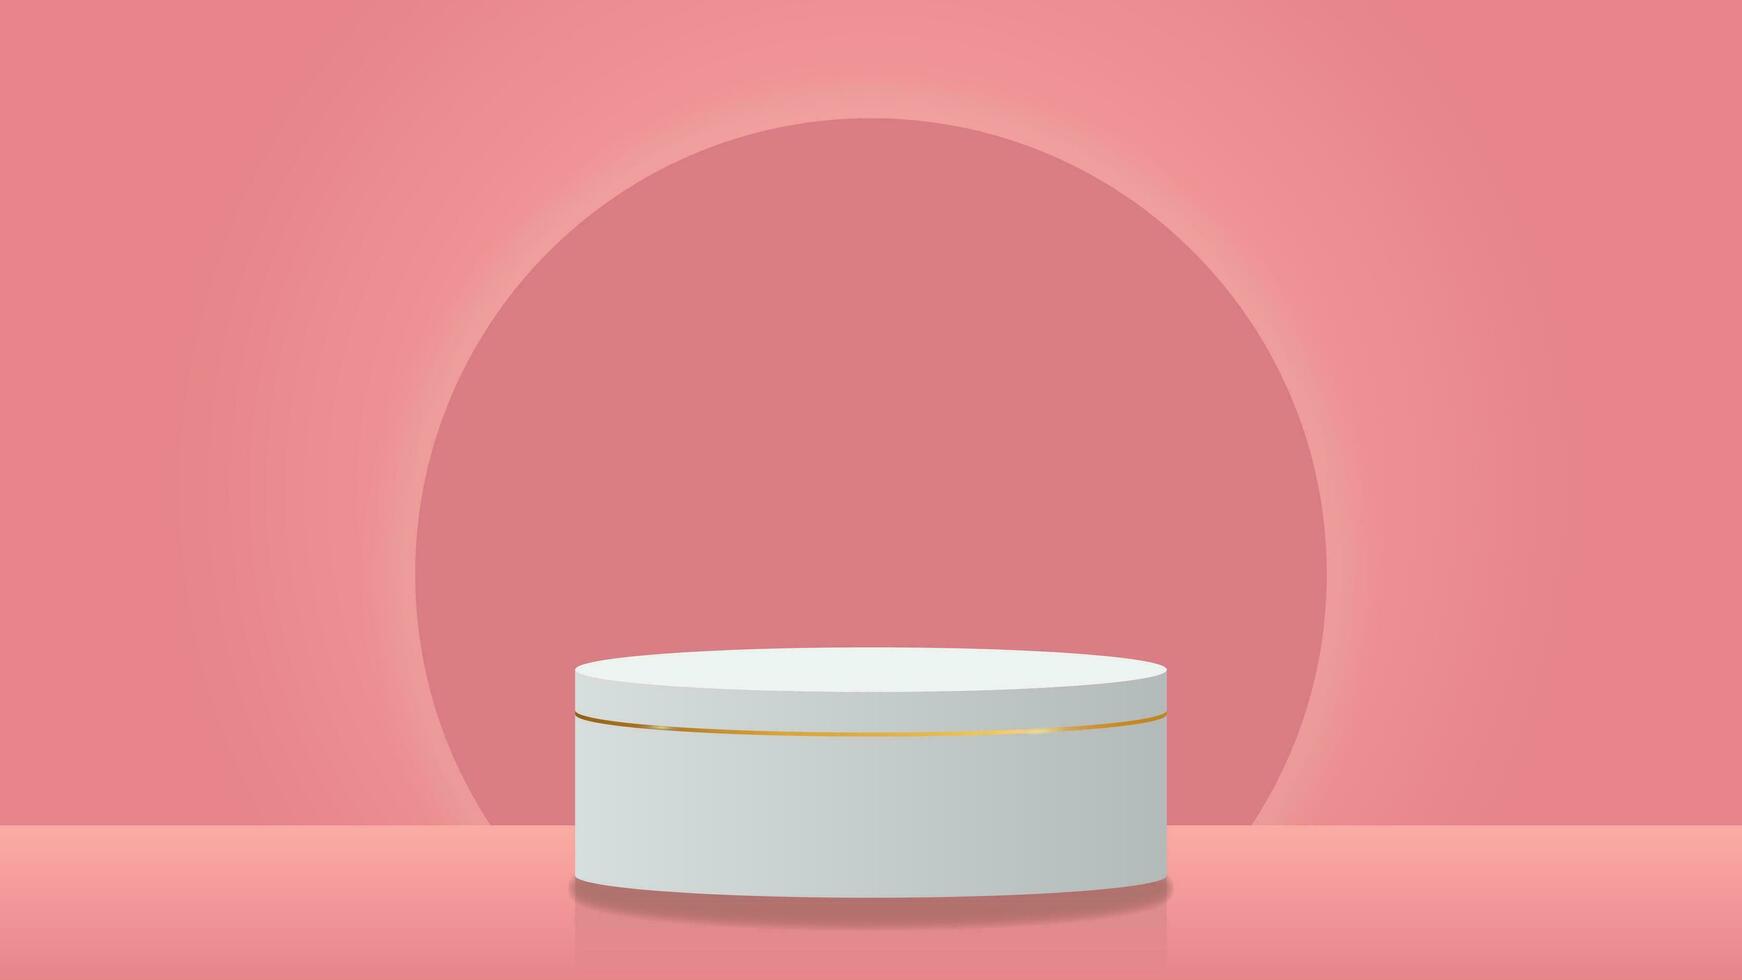 3d wit cilinder voetstuk of podium in zacht roze kleur achtergrond met gloed cirkel. minimaal tafereel voor Product Scherm presentatie vector illustratie eps10